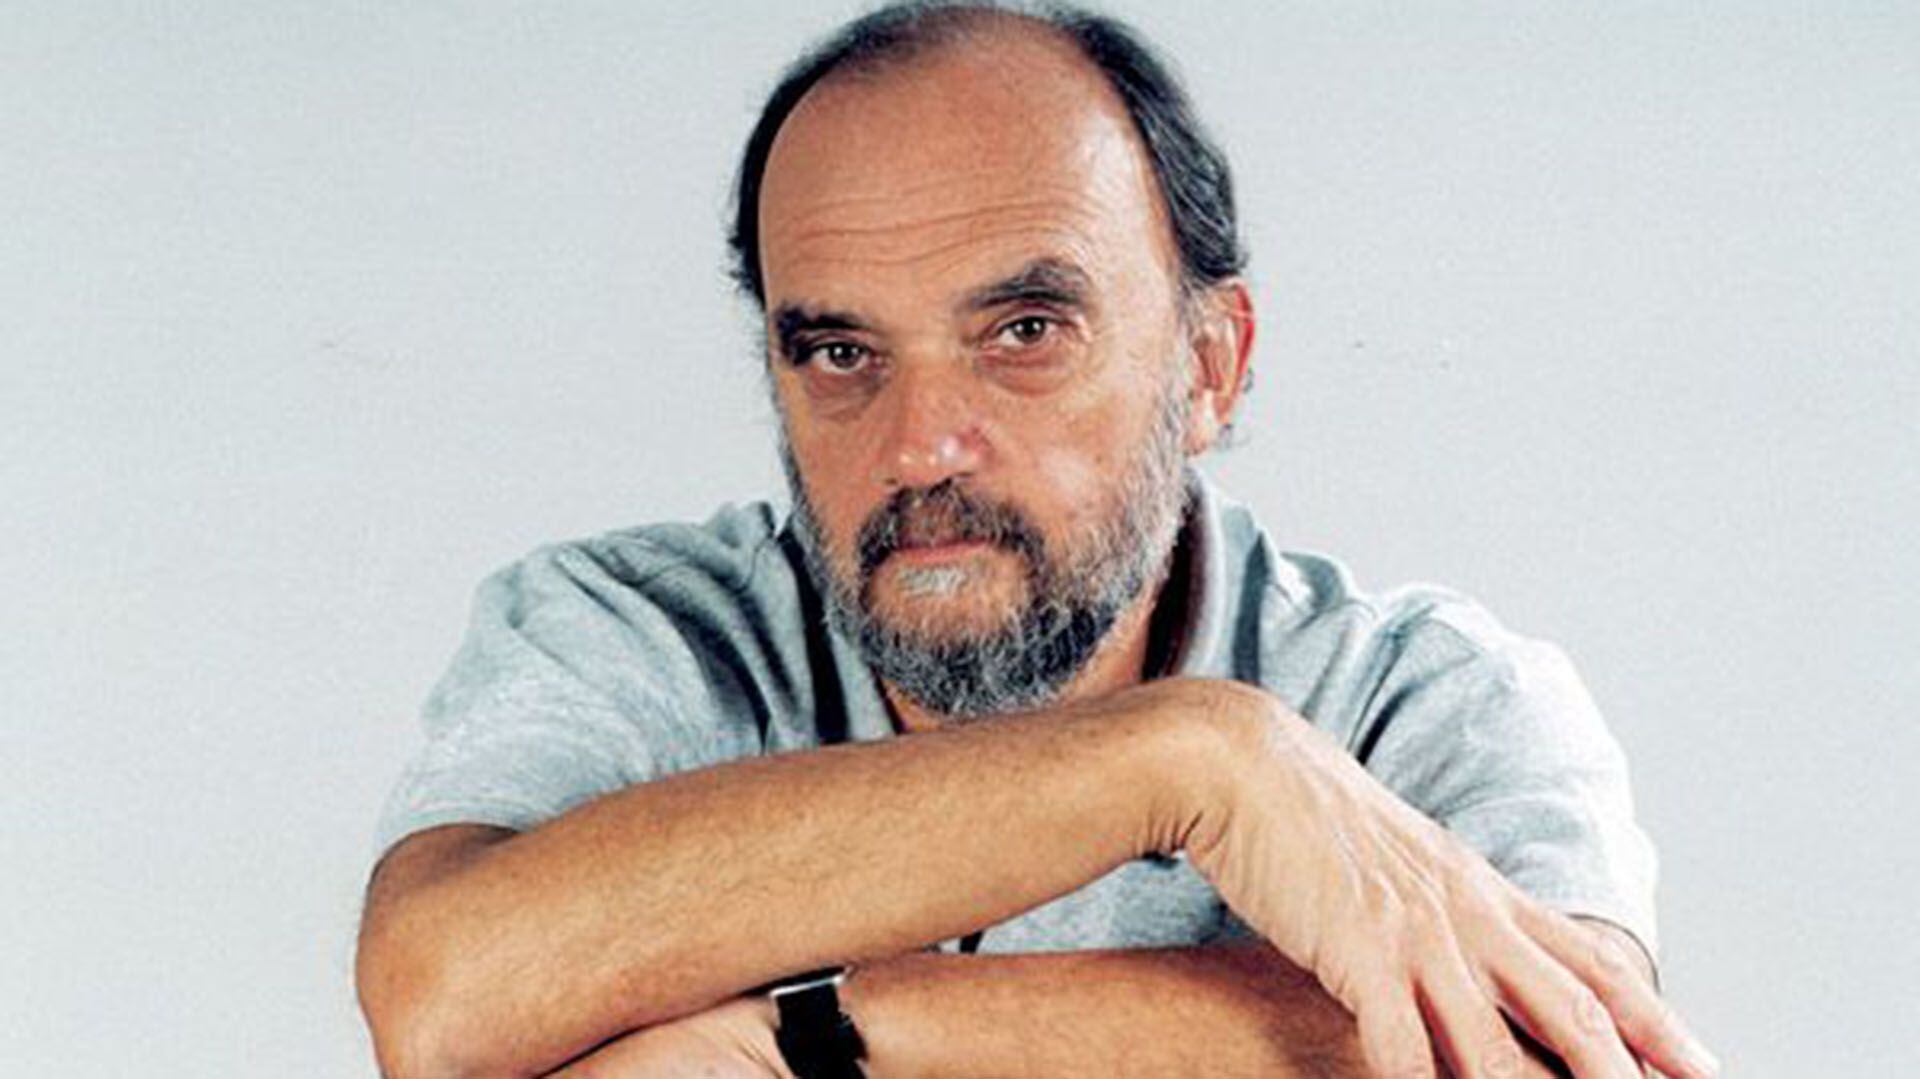 Escritor, dibujante y humorista rosarino, Roberto Fontanarrosa fue uno de los autores más queridos por el medio y por el público. Murió a los 62 años, el 19 de julio de 2007 (Télam)